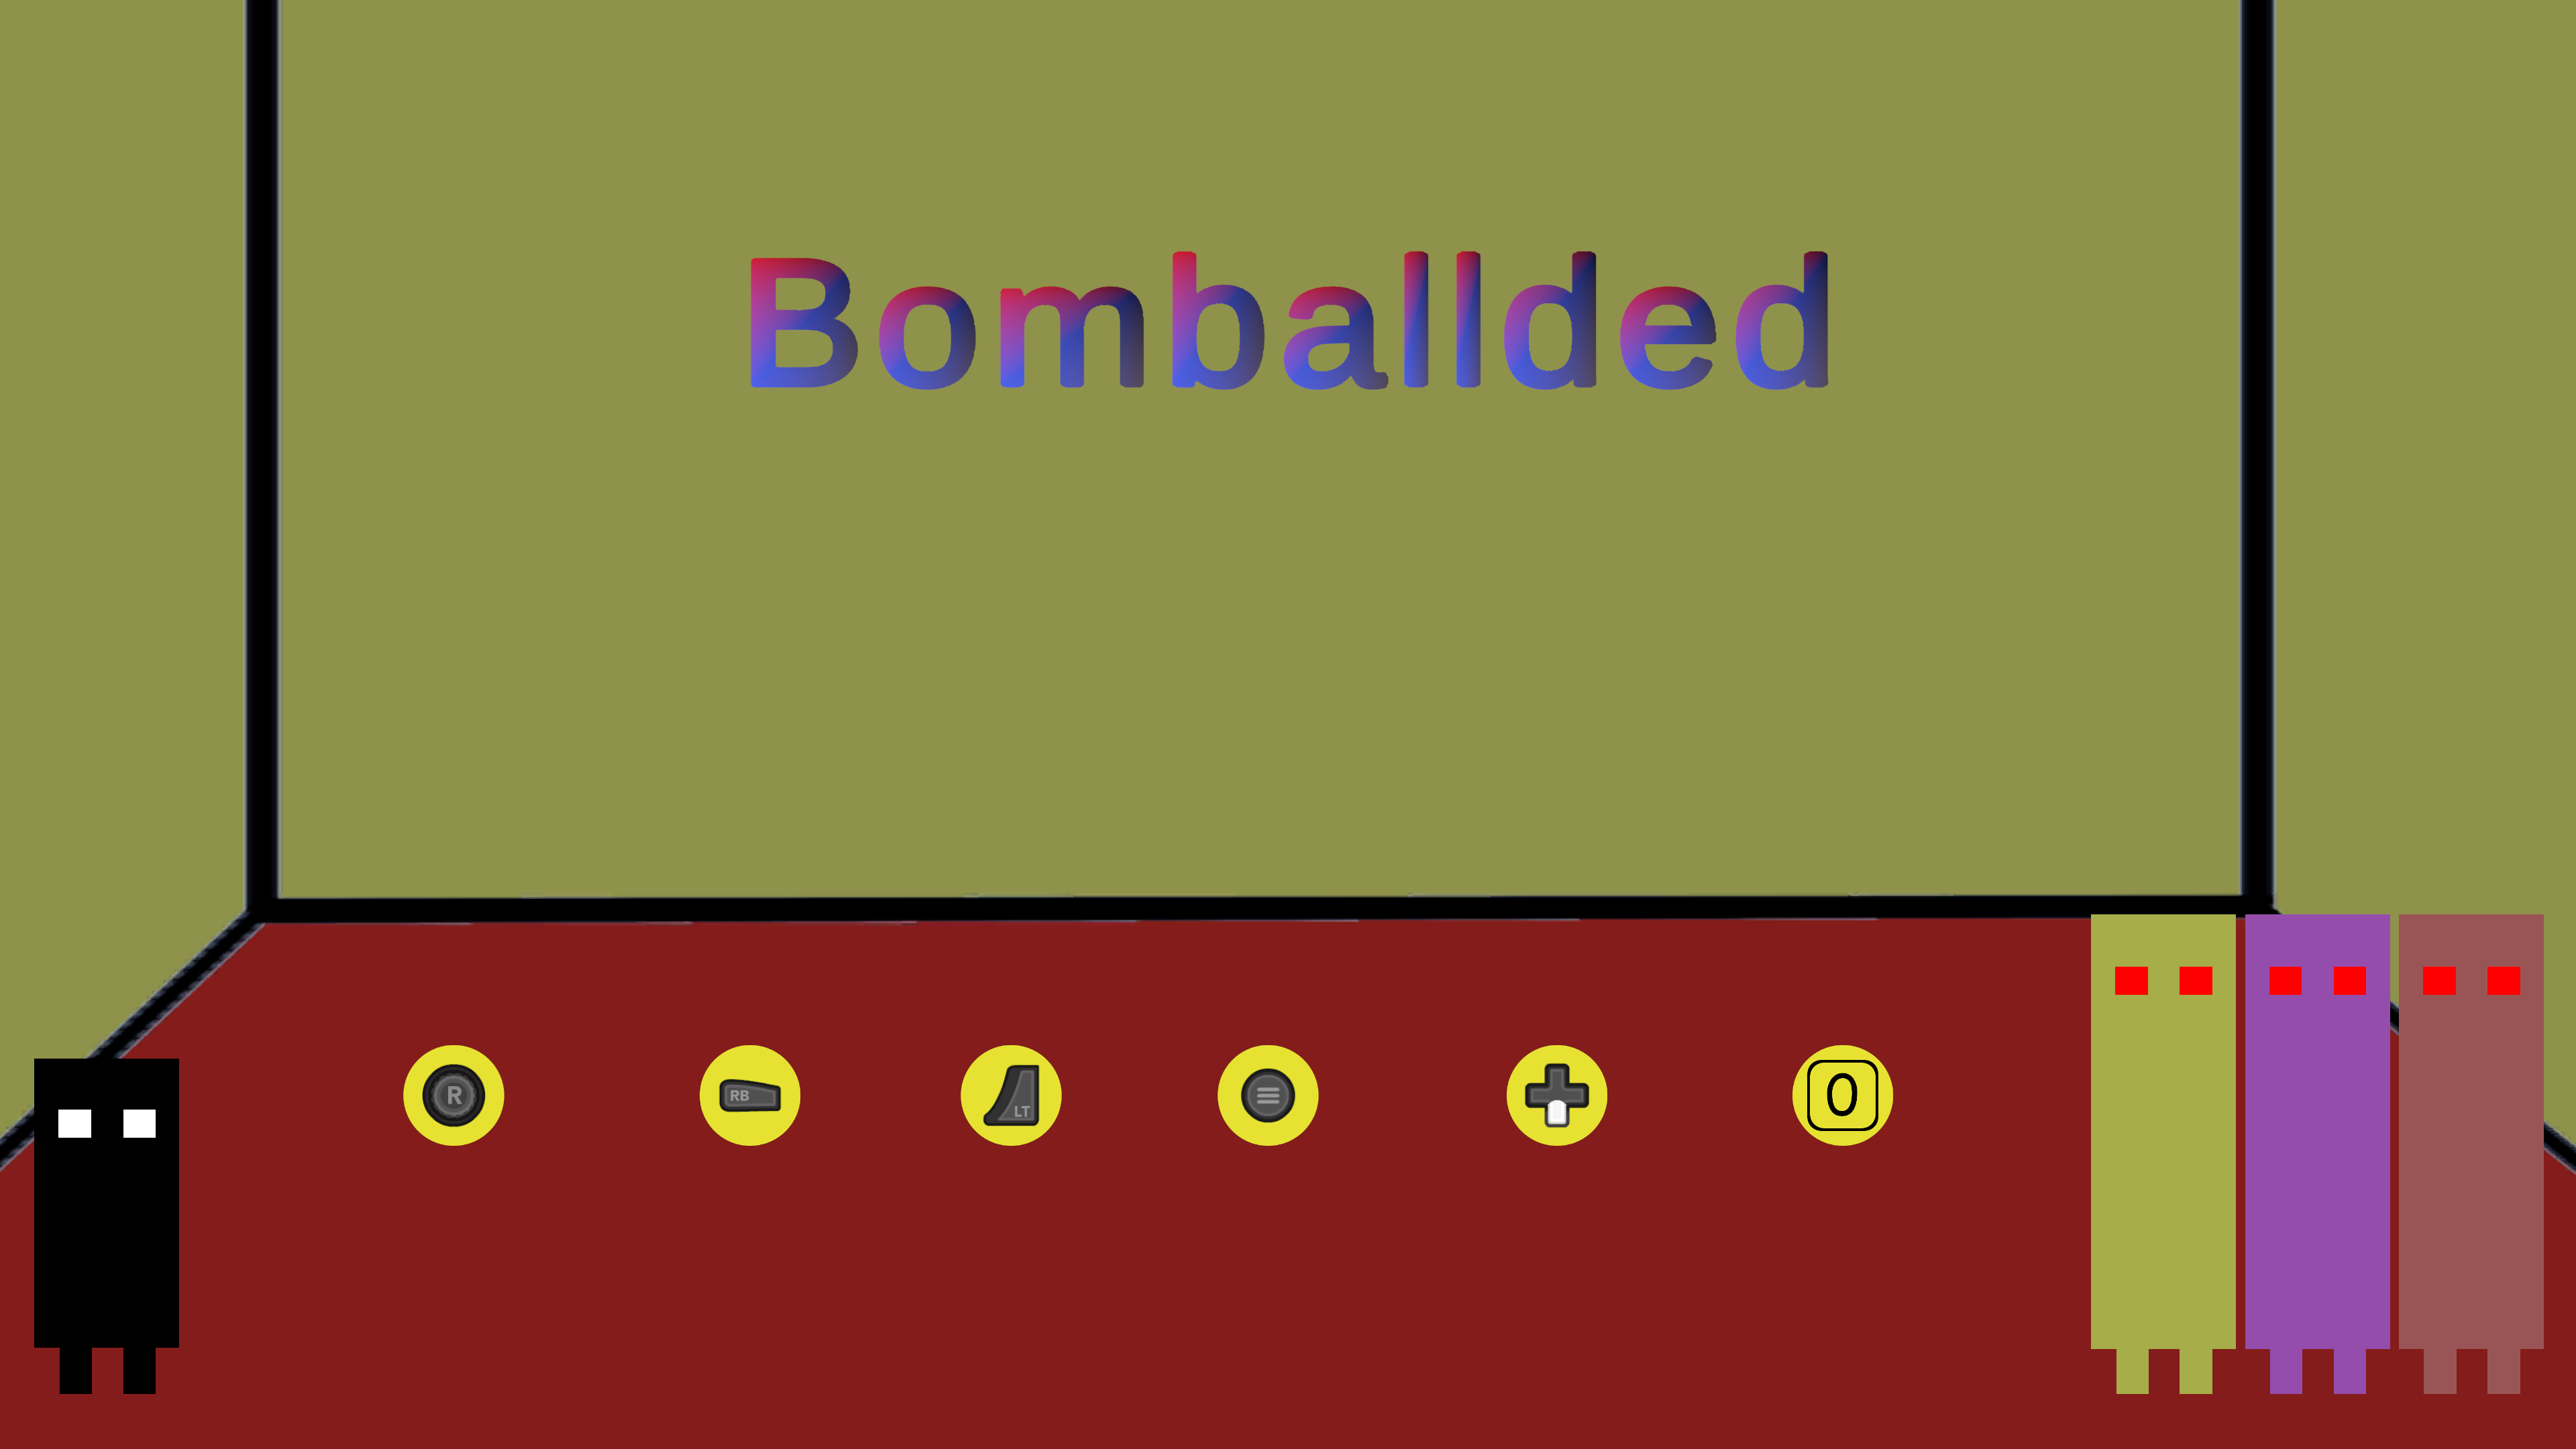 Bomballded